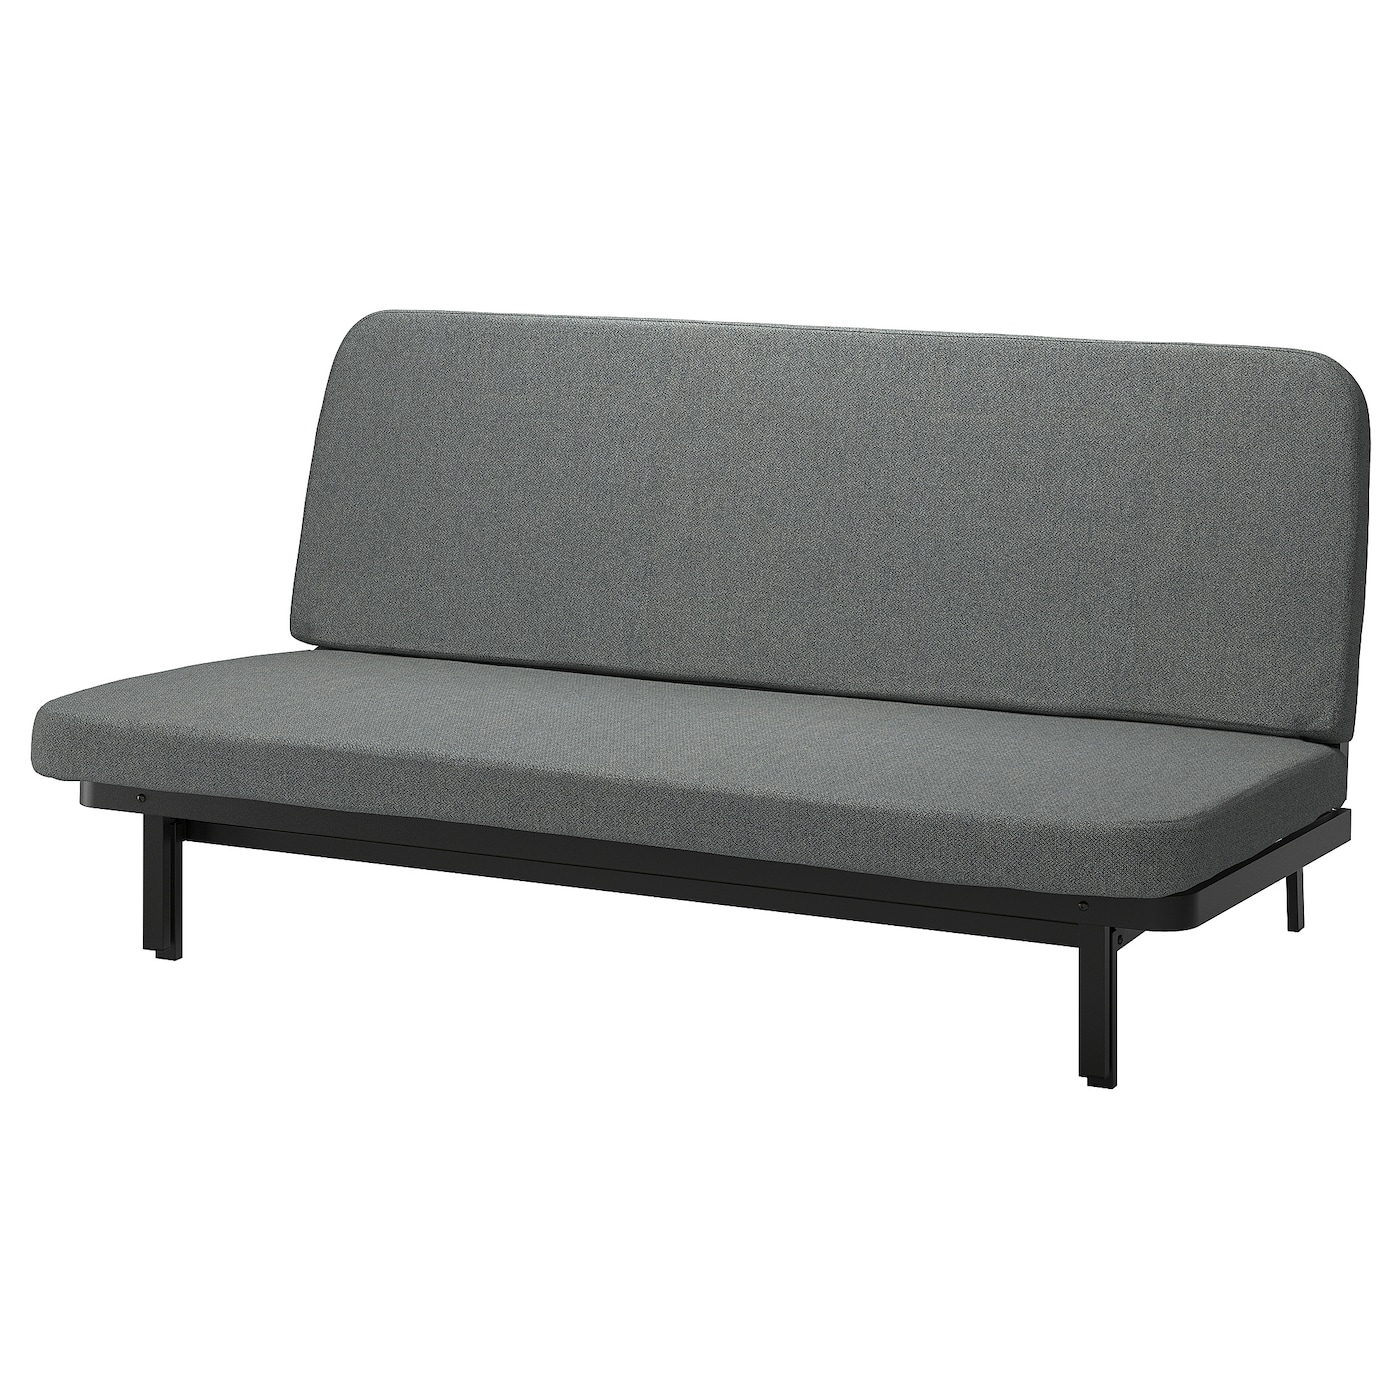 NYHAMN 3-местный диван-кровать, поролоновый матрас в комплекте/Скартофт черный/светло-серый IKEA